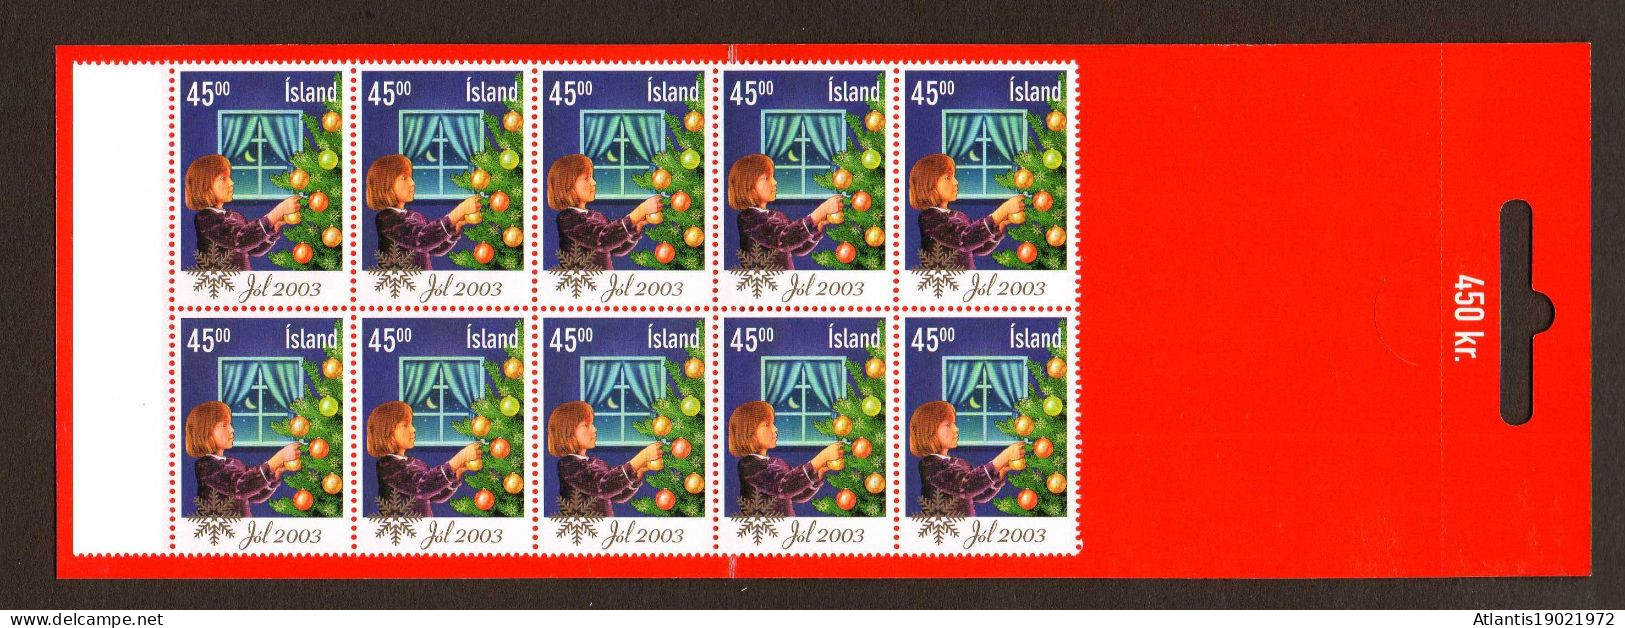 1 MARKENHEFTCHEN ISLAND WEIHNACHTEN JOL 2003 POSTFRISCH - Postzegelboekjes